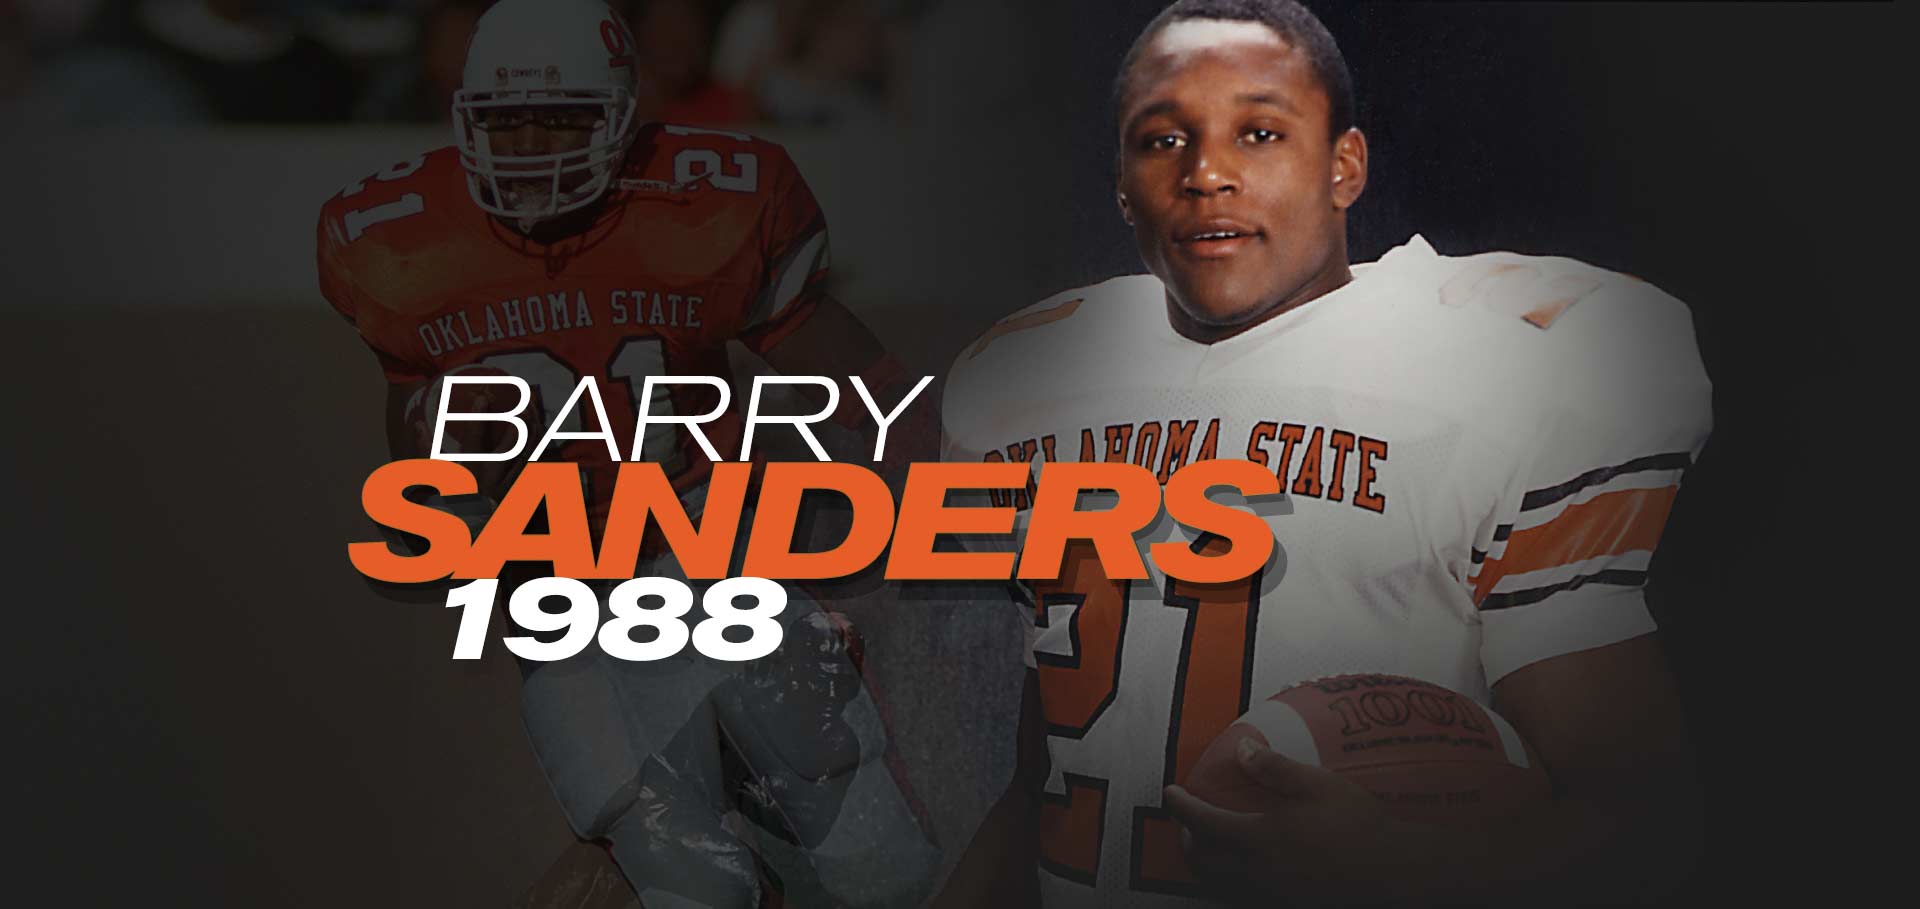 barry sanders jr jersey number